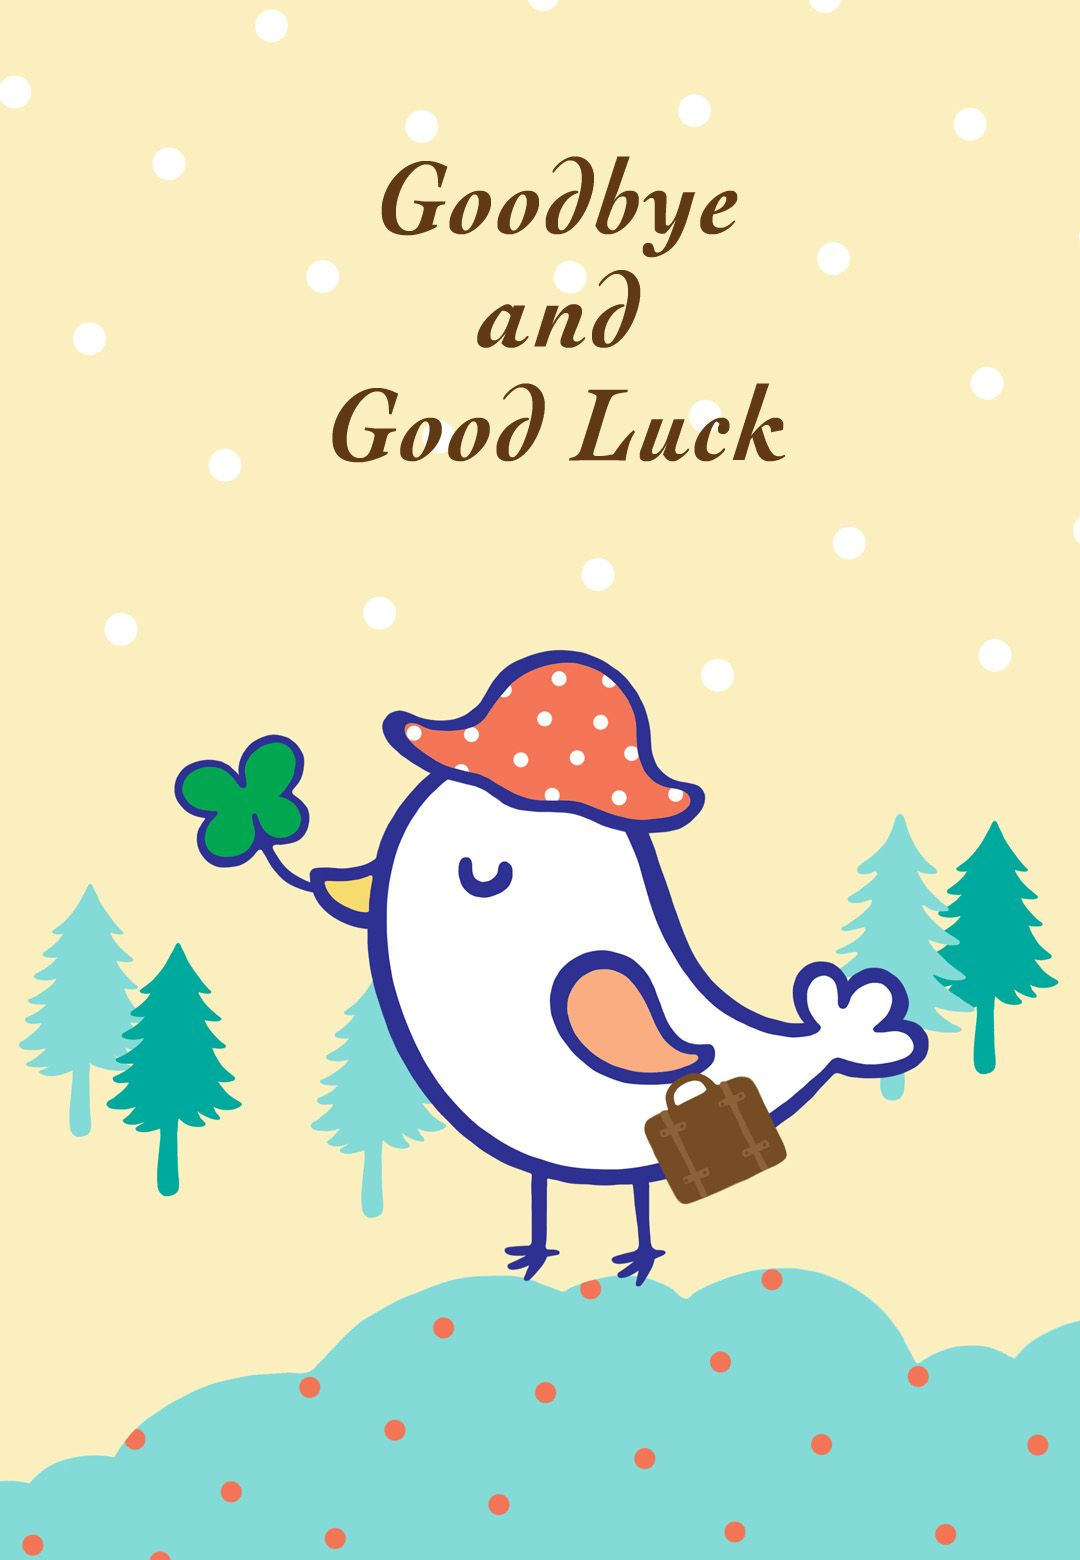 Free Printable Goodbye And Good Luck Greeting Card | Littlestar - Free Printable Goodbye Cards